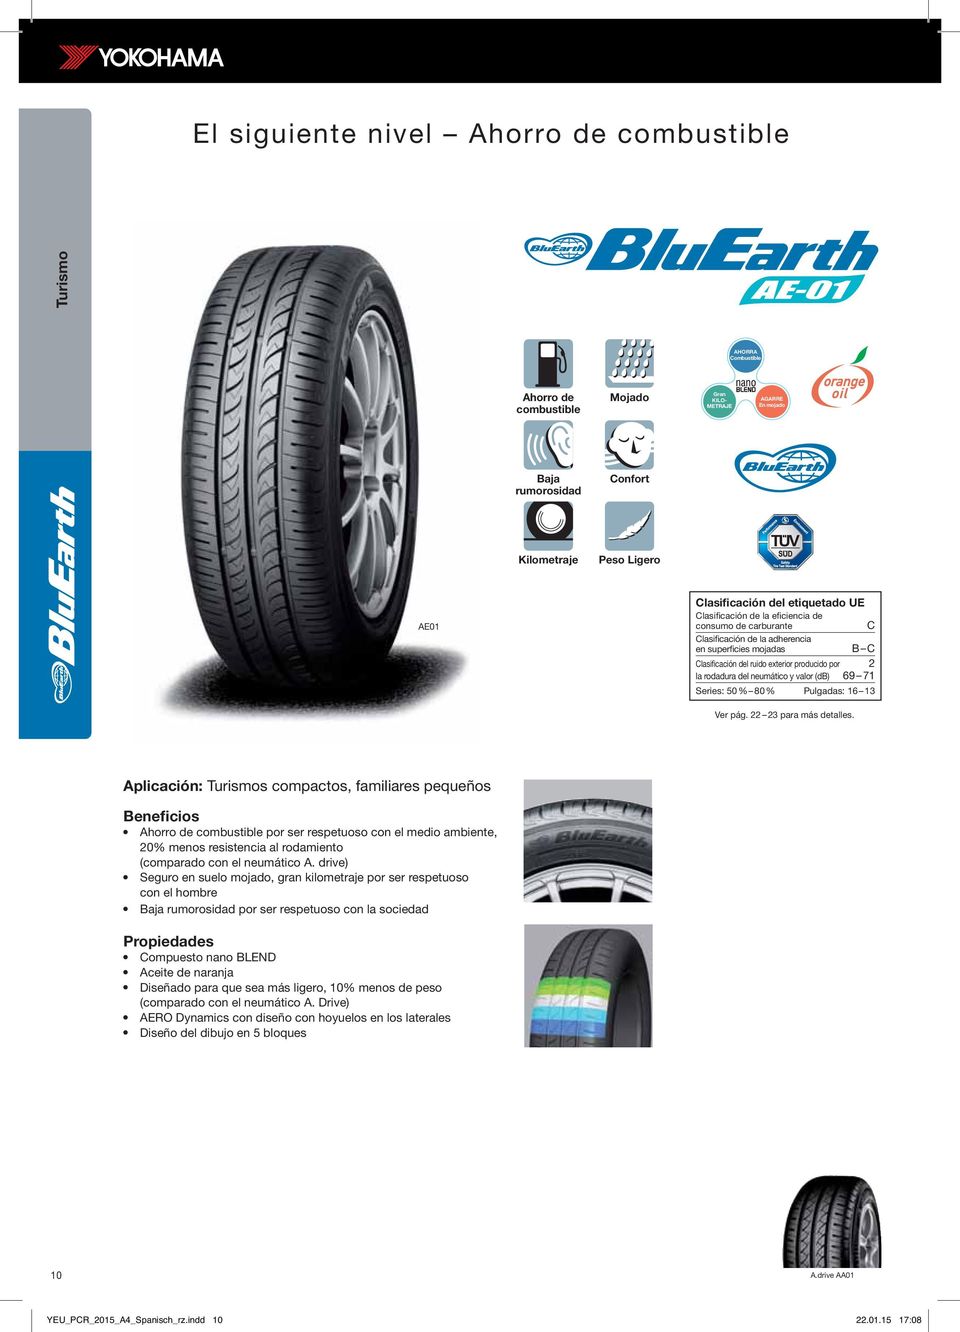 neumático y valor (db) 69 71 Series: 50 % 80 % Pulgadas: 16 13 Ver pág. 22 23 para más detalles.